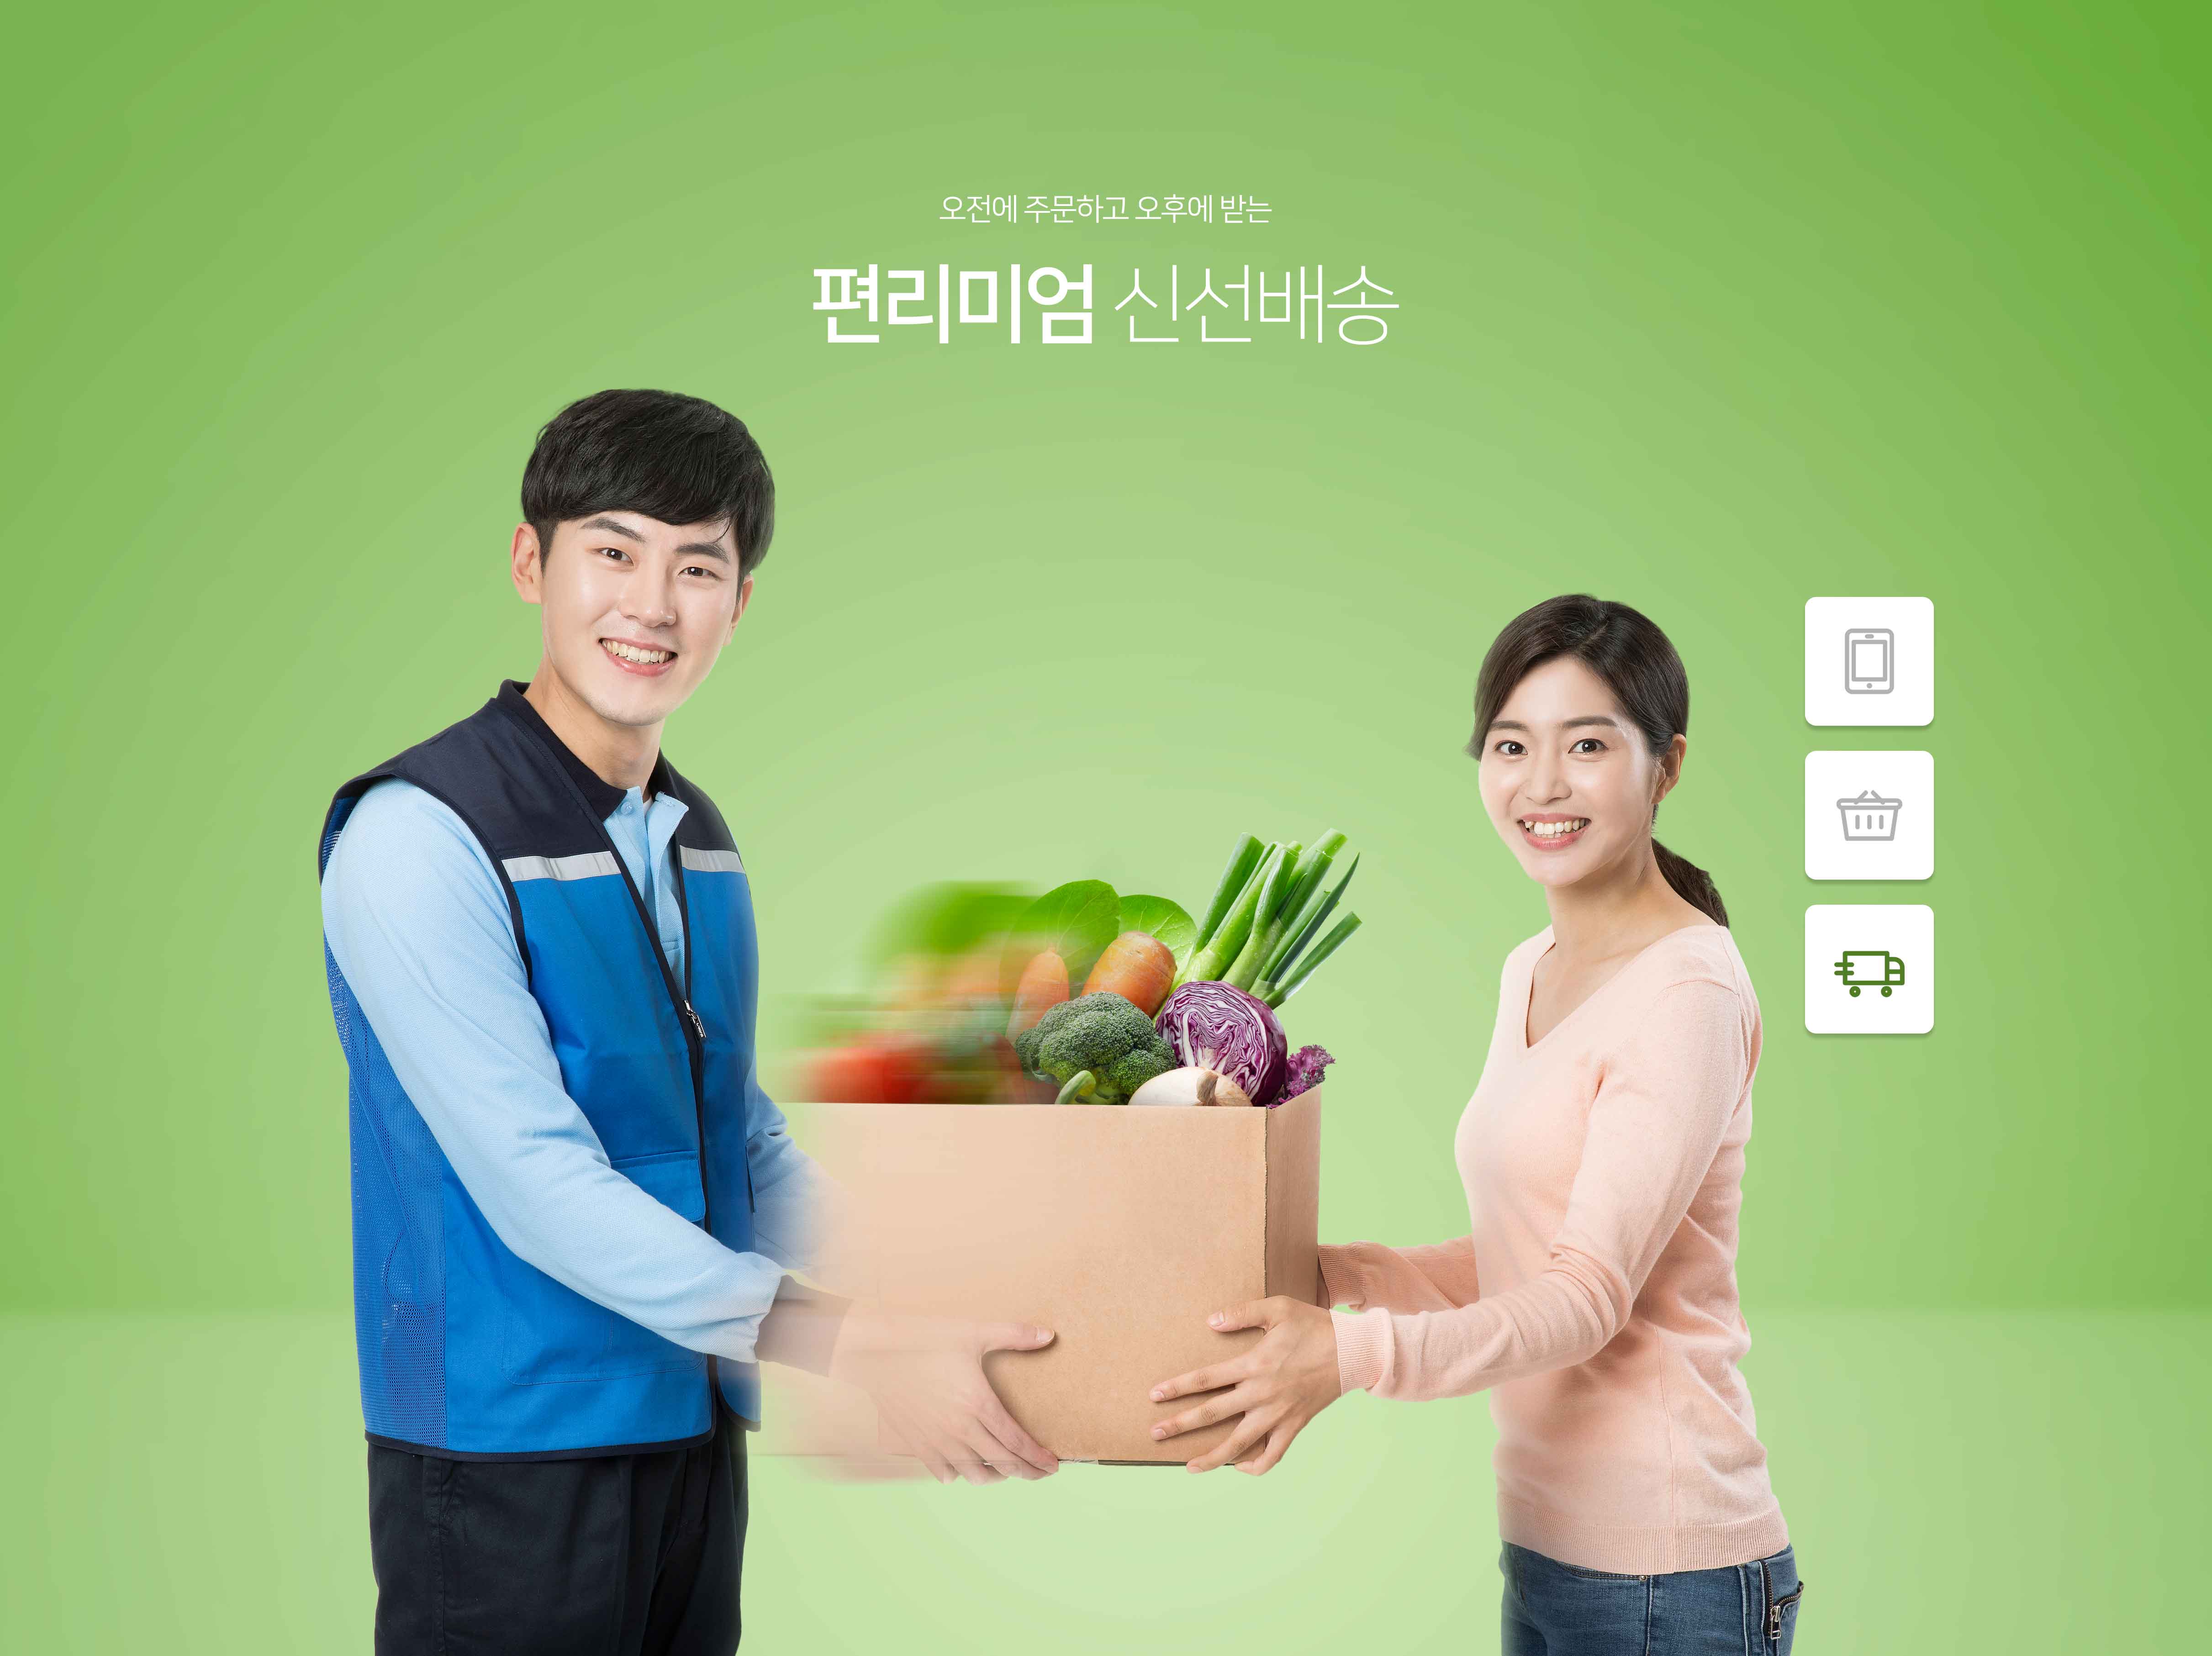 生鲜蔬果配送服务宣传海报/Banner设计素材插图